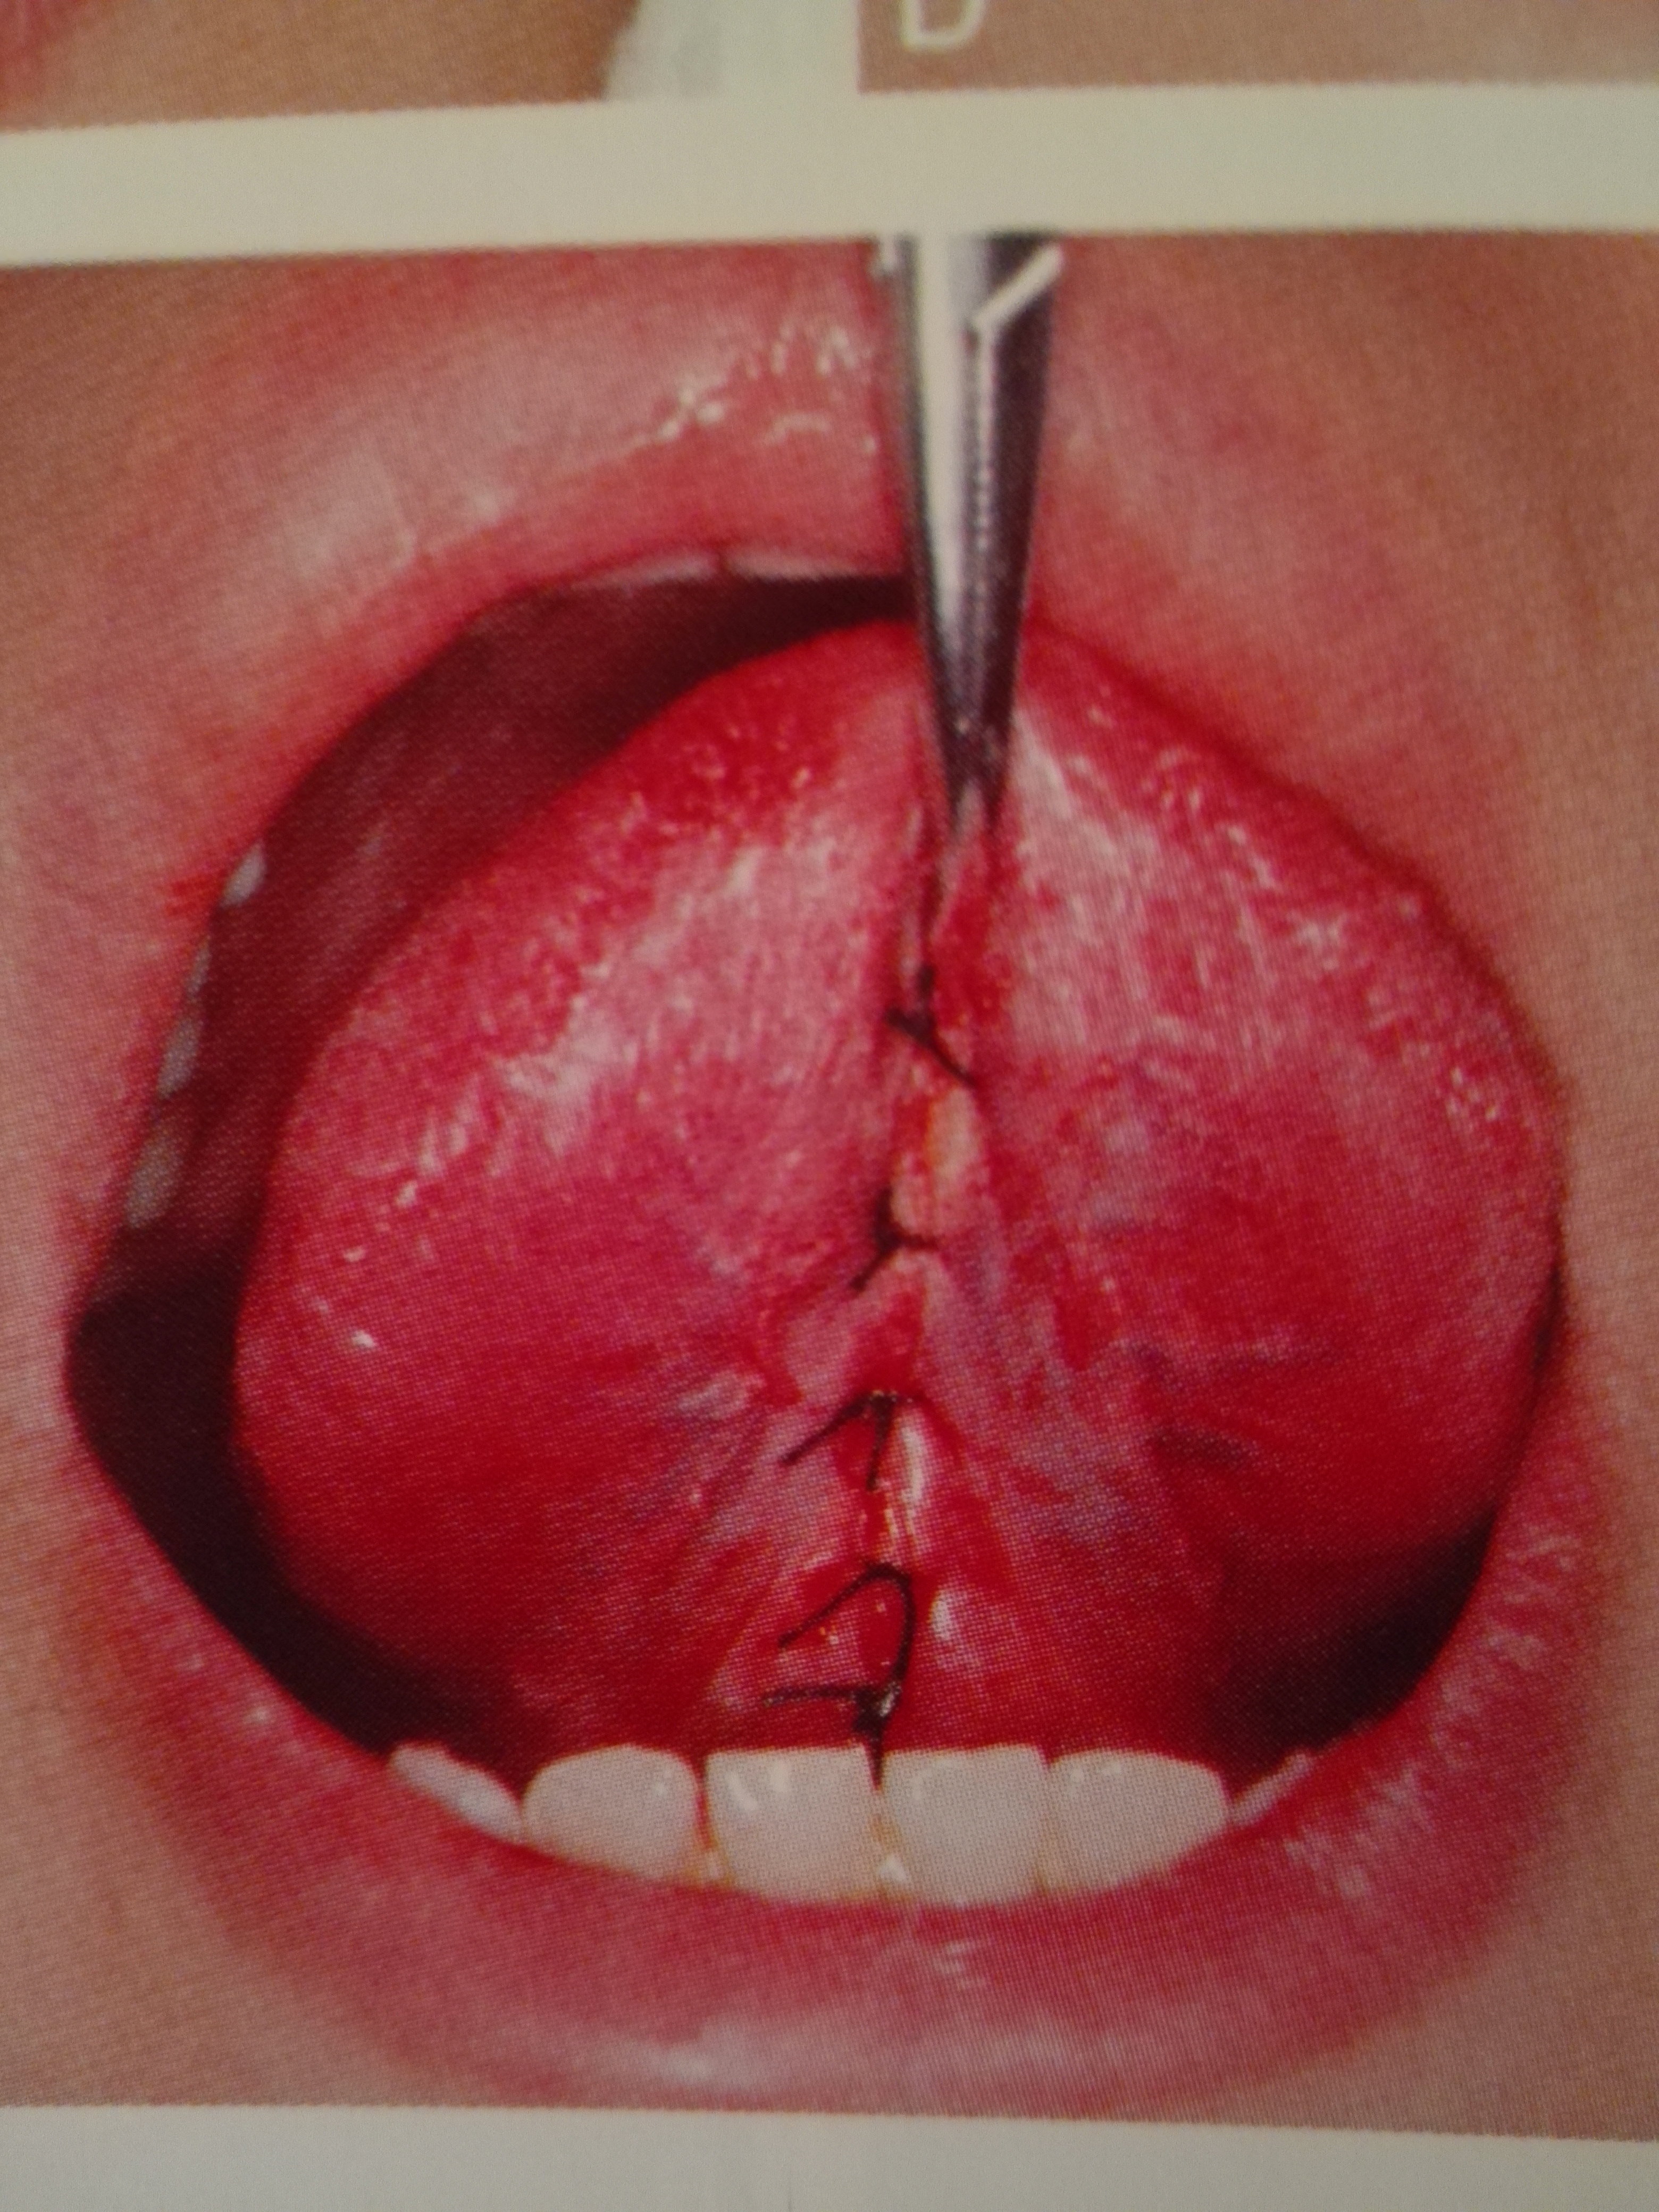 成人舌系带手术图片